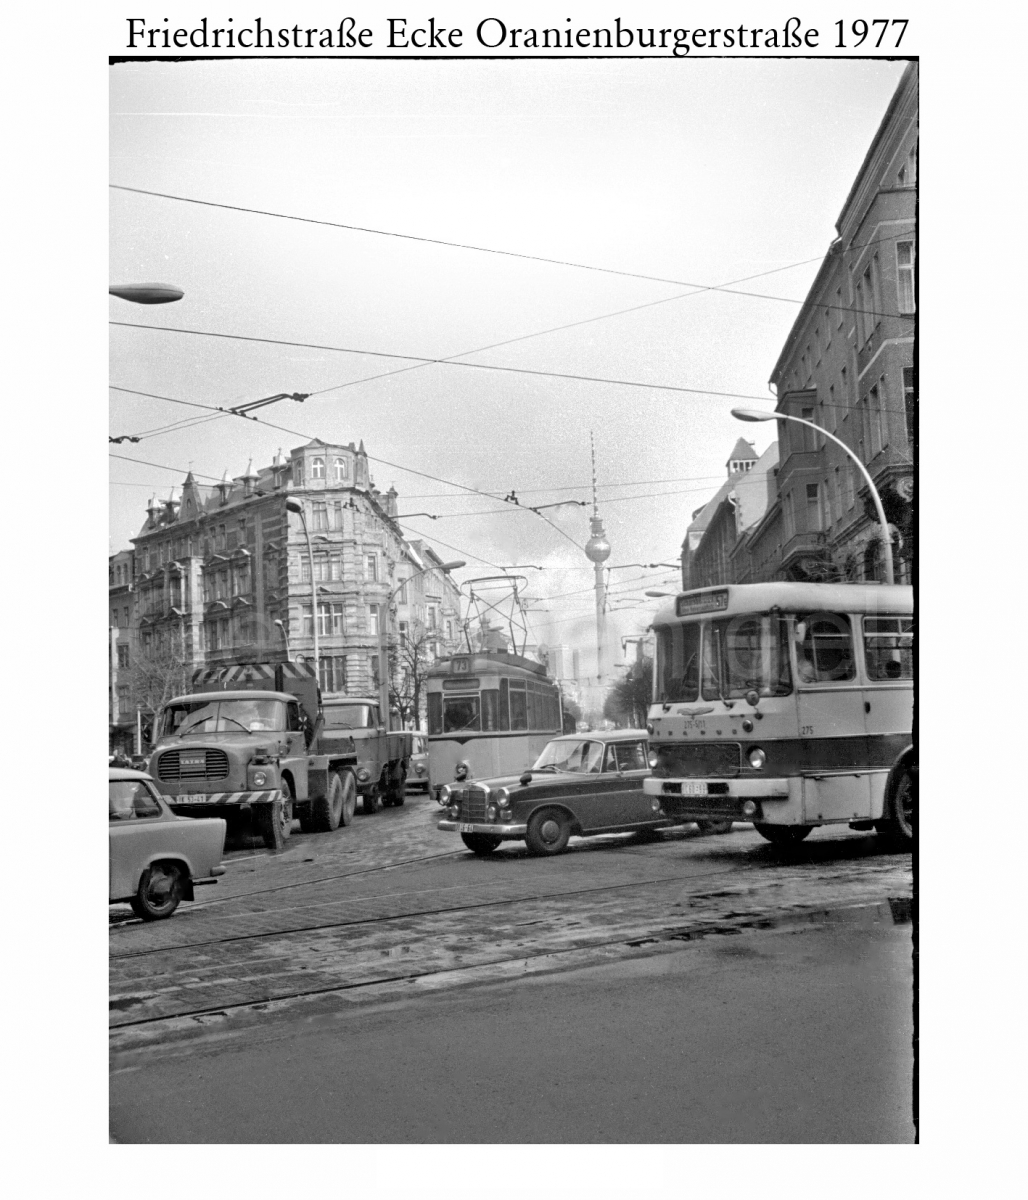 Nr01-142_Friedrichstraße-Ecke-Oranienburgerstraße-1977